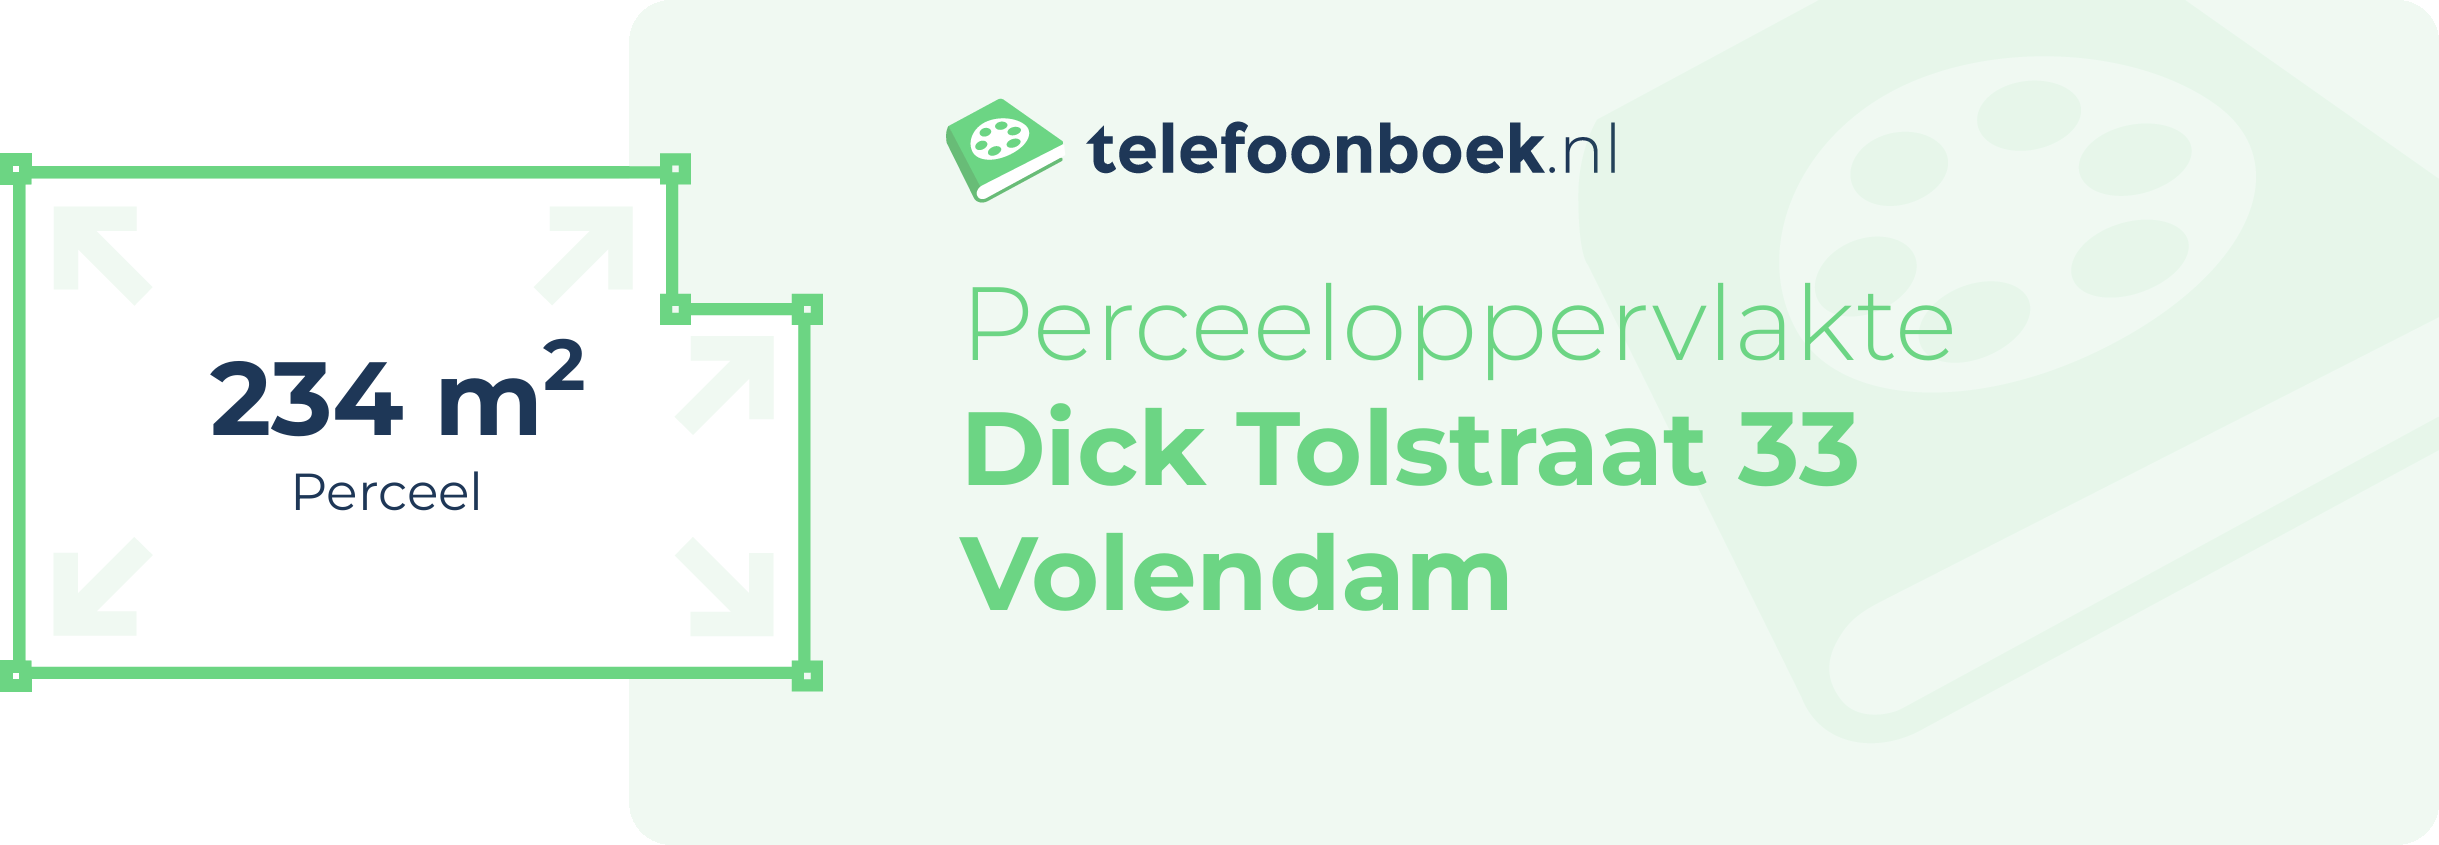 Perceeloppervlakte Dick Tolstraat 33 Volendam